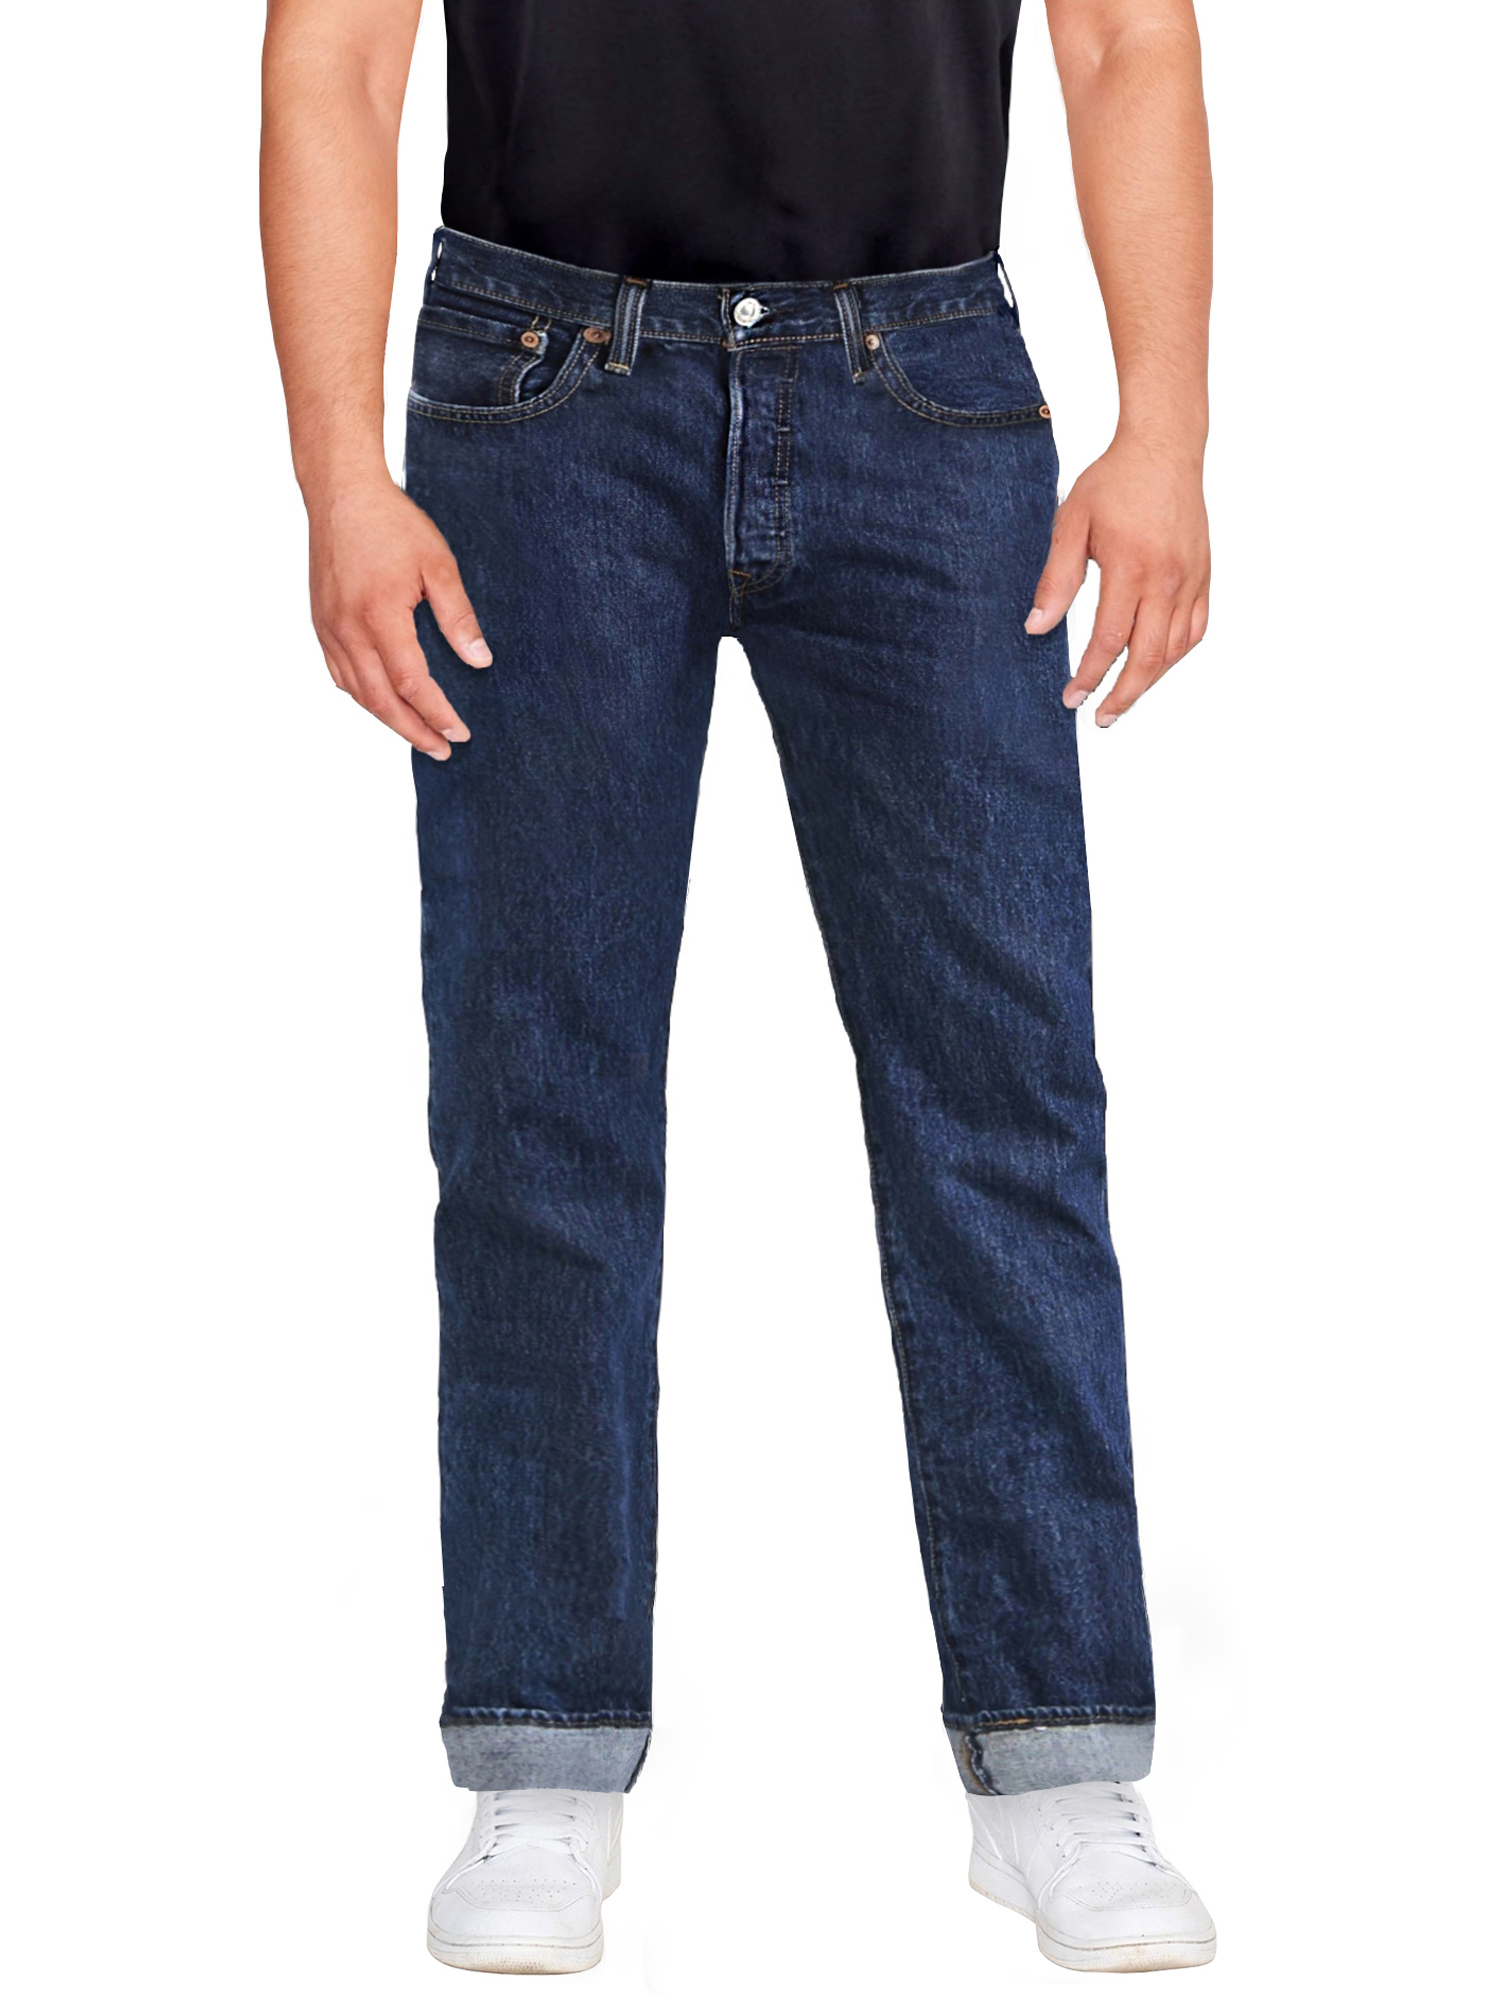 Levi's Men's 501 Original Fit Jeans - image 8 of 9